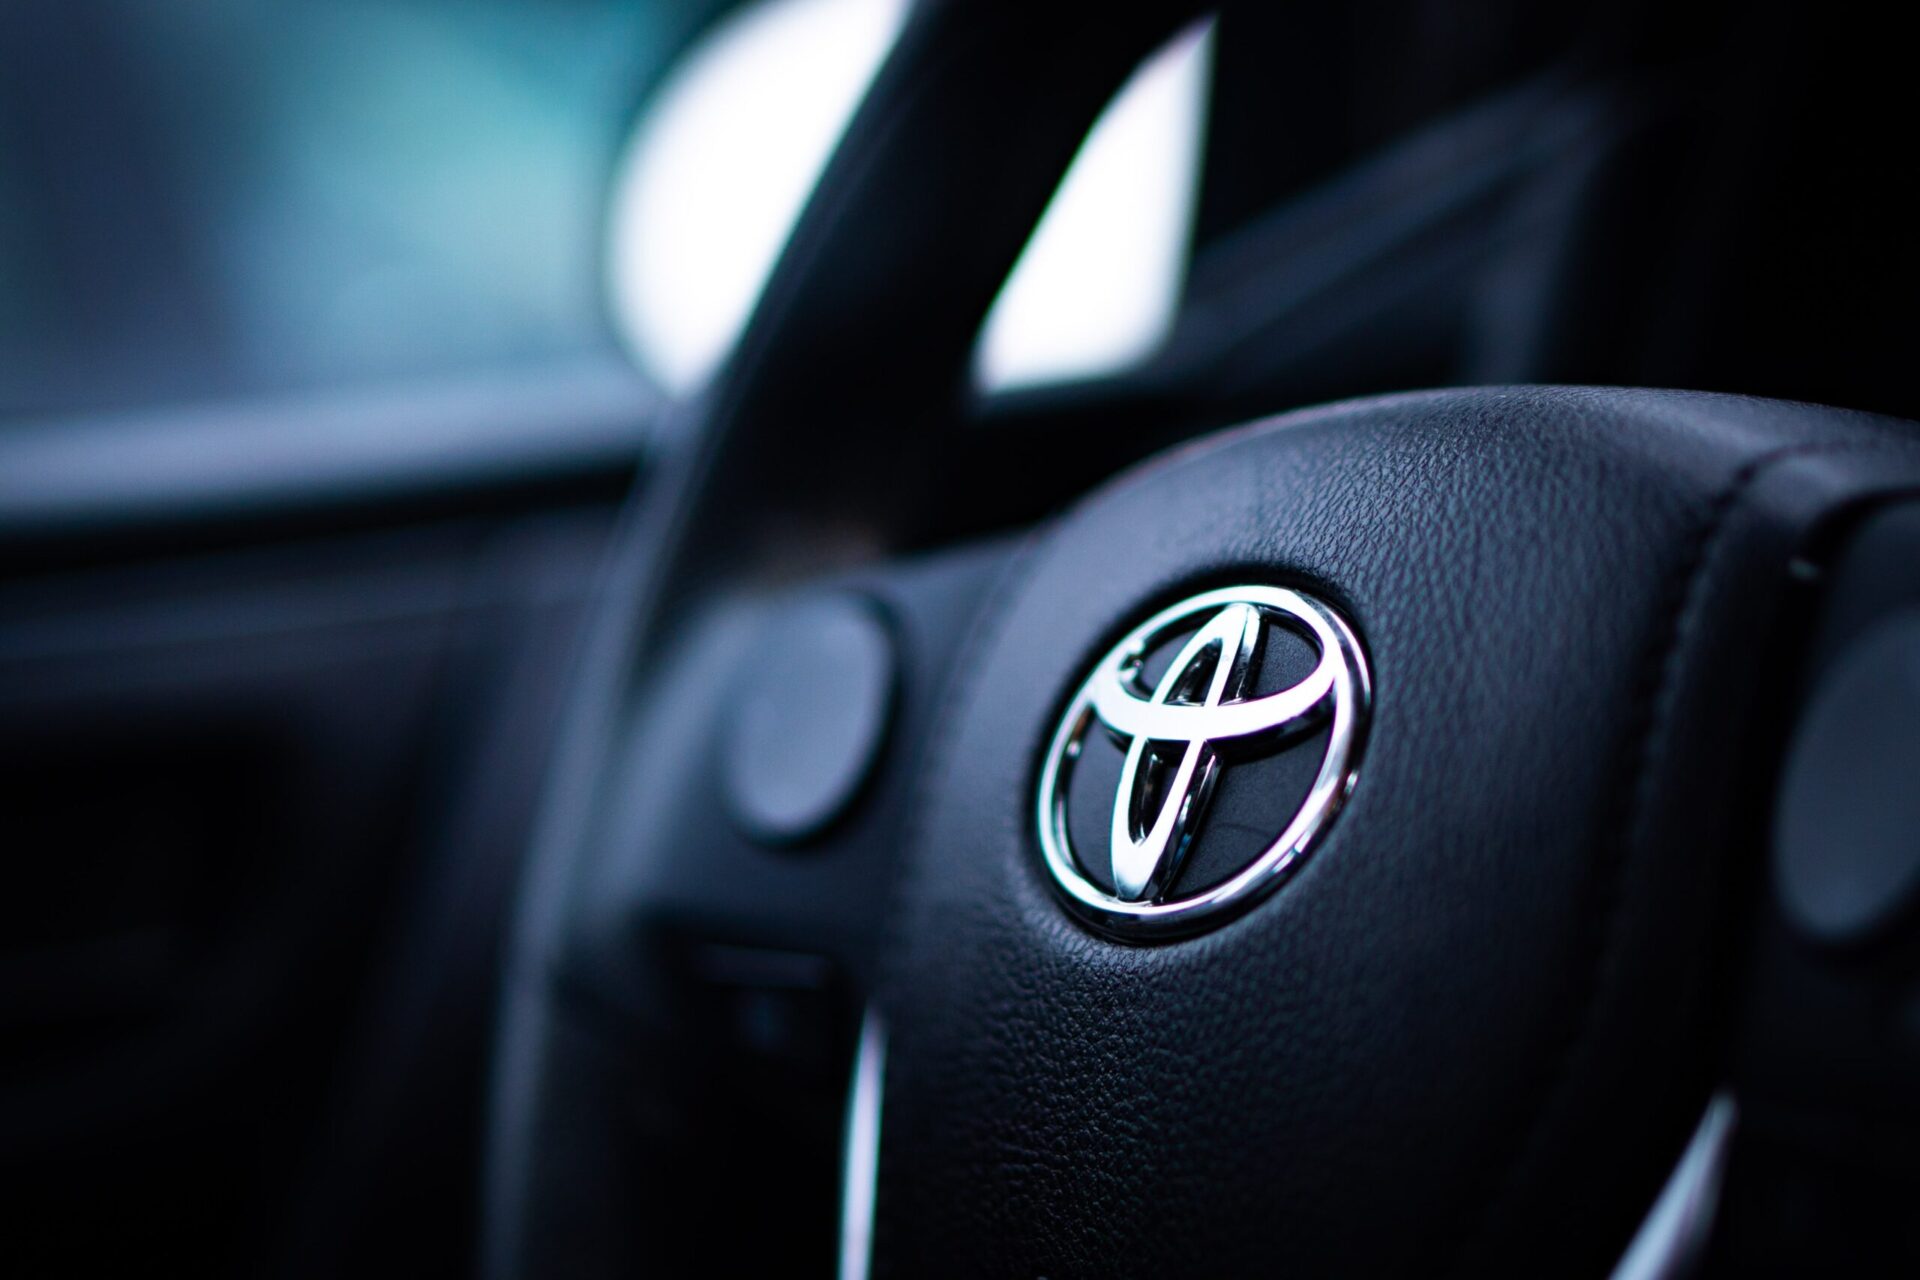 Toyota приостановит производство одной из линий по производству Corolla